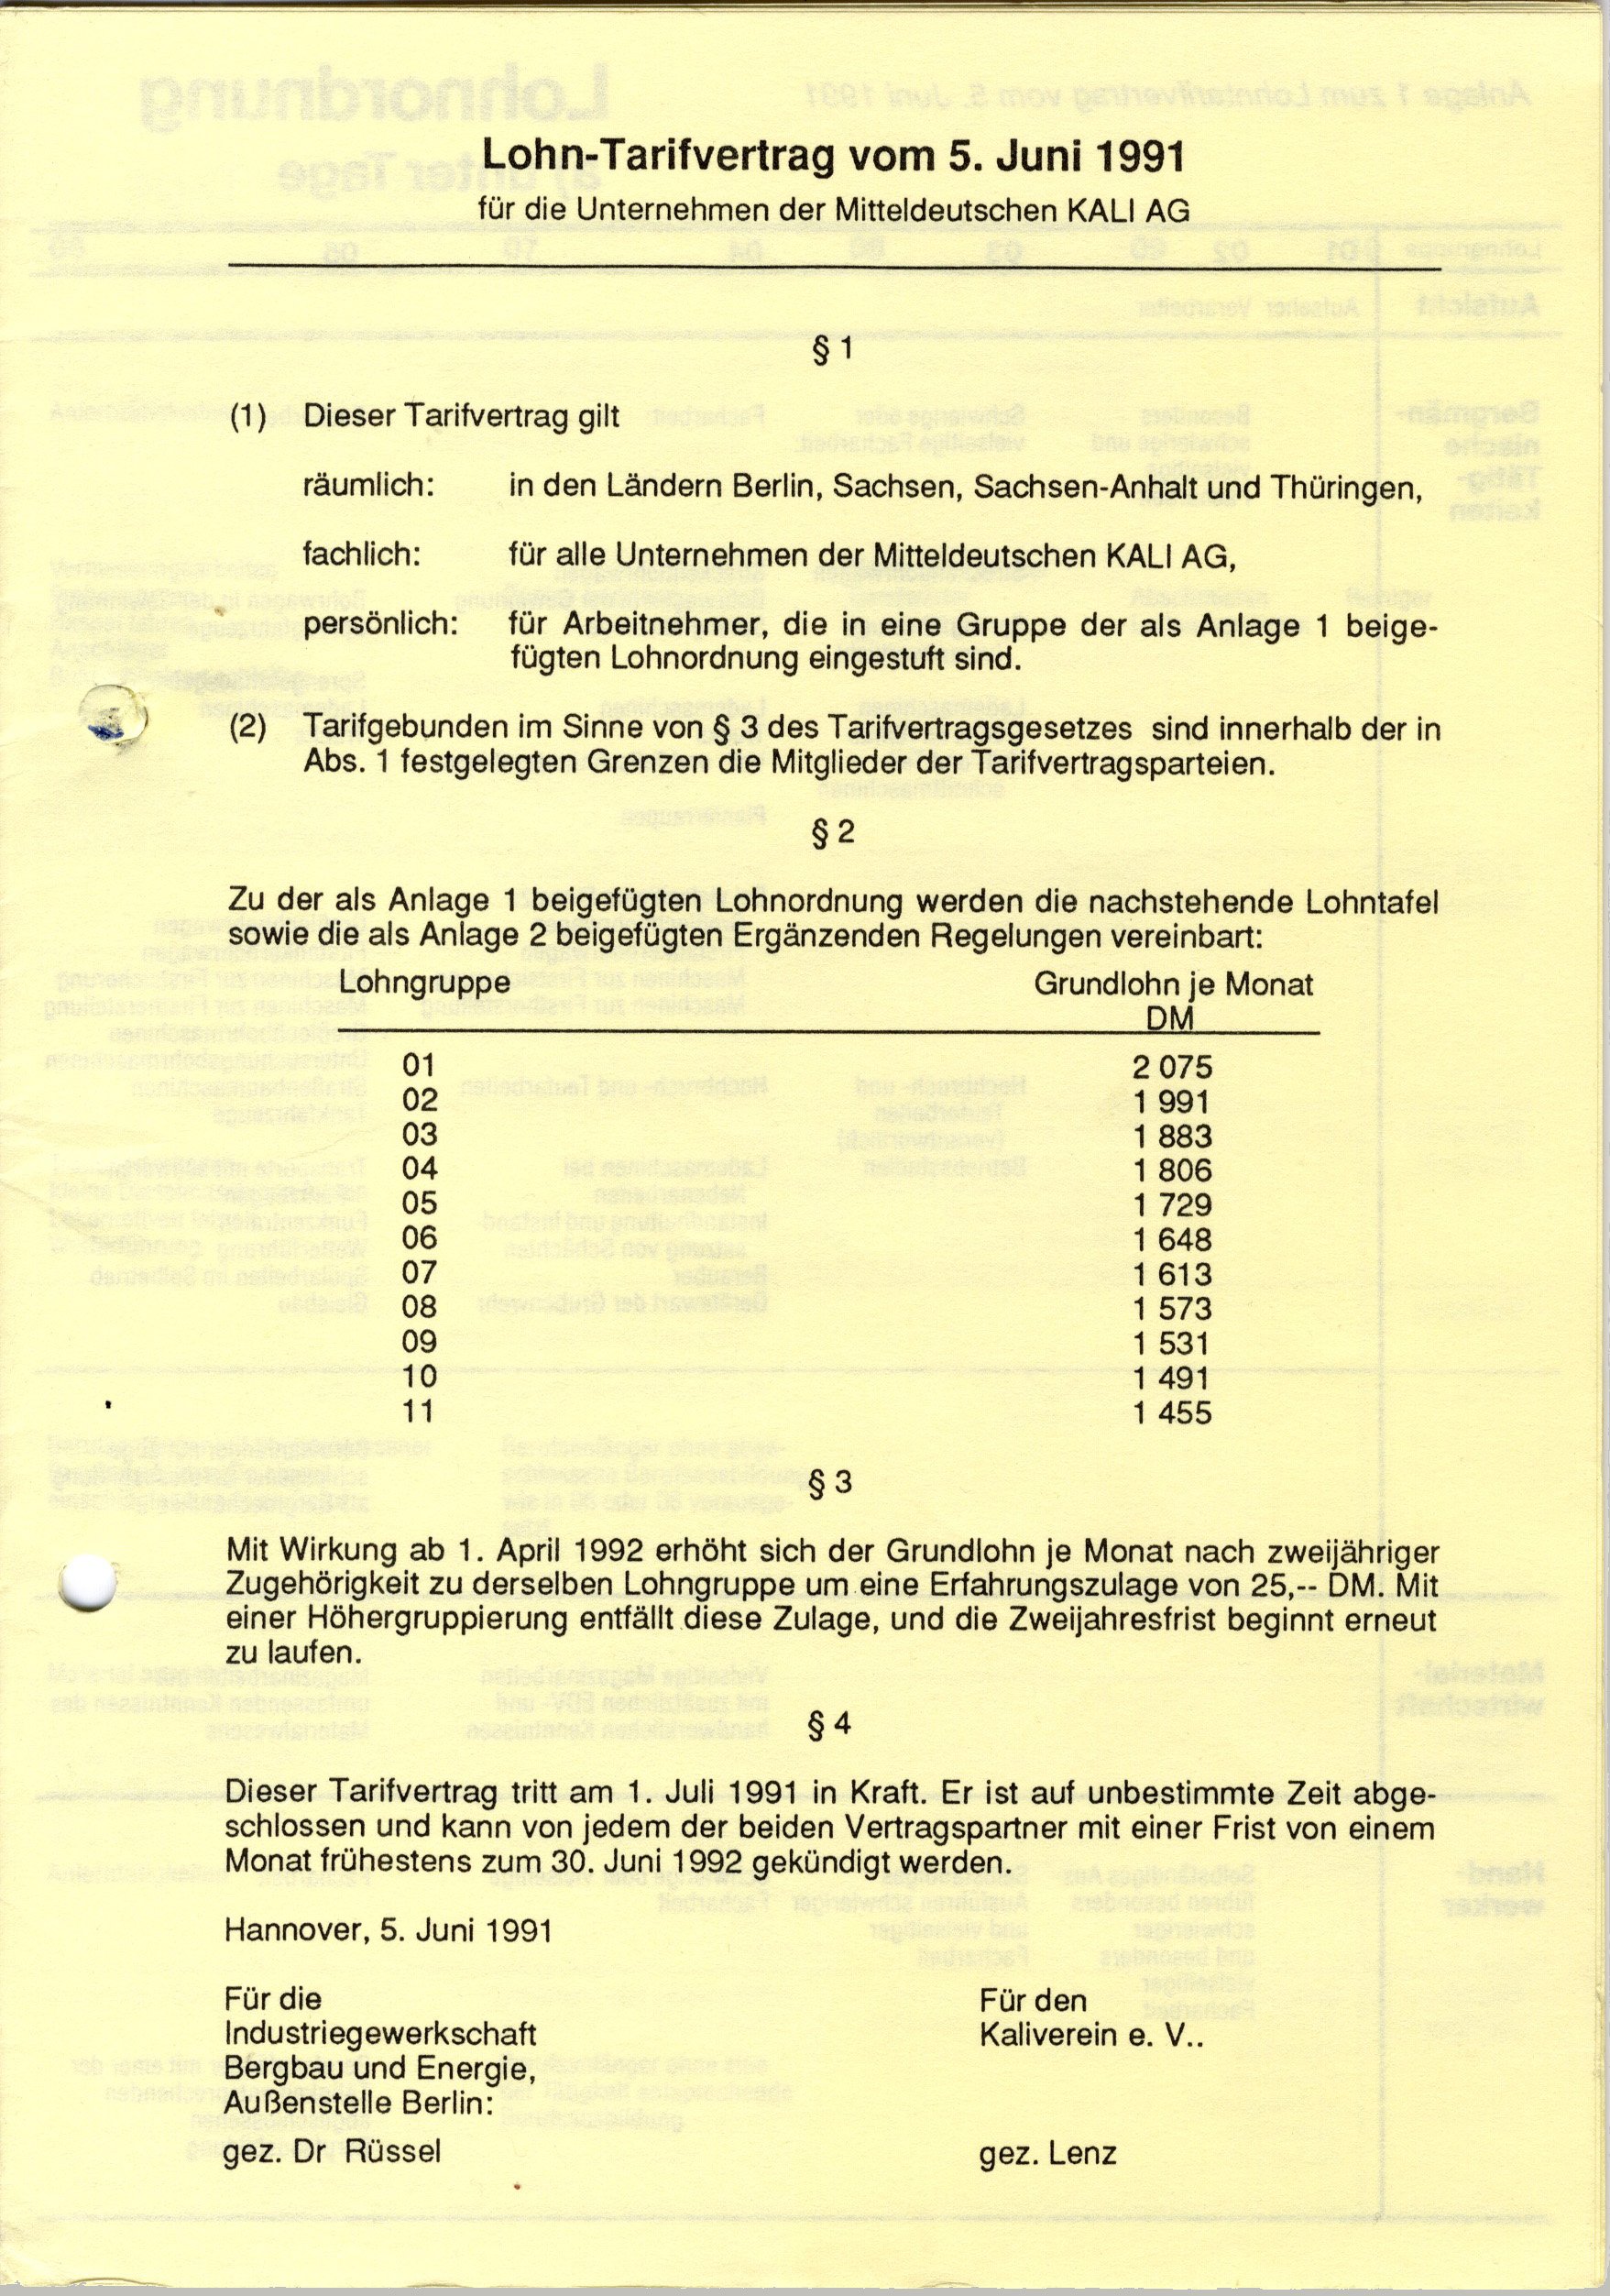 Lohn-Tarifvertrag vom 5. Juni 1991 für die Unternehmen der Mitteldeutschen Kali AG (Werra-Kalibergbau-Museum, Heringen/W. CC BY-NC-SA)